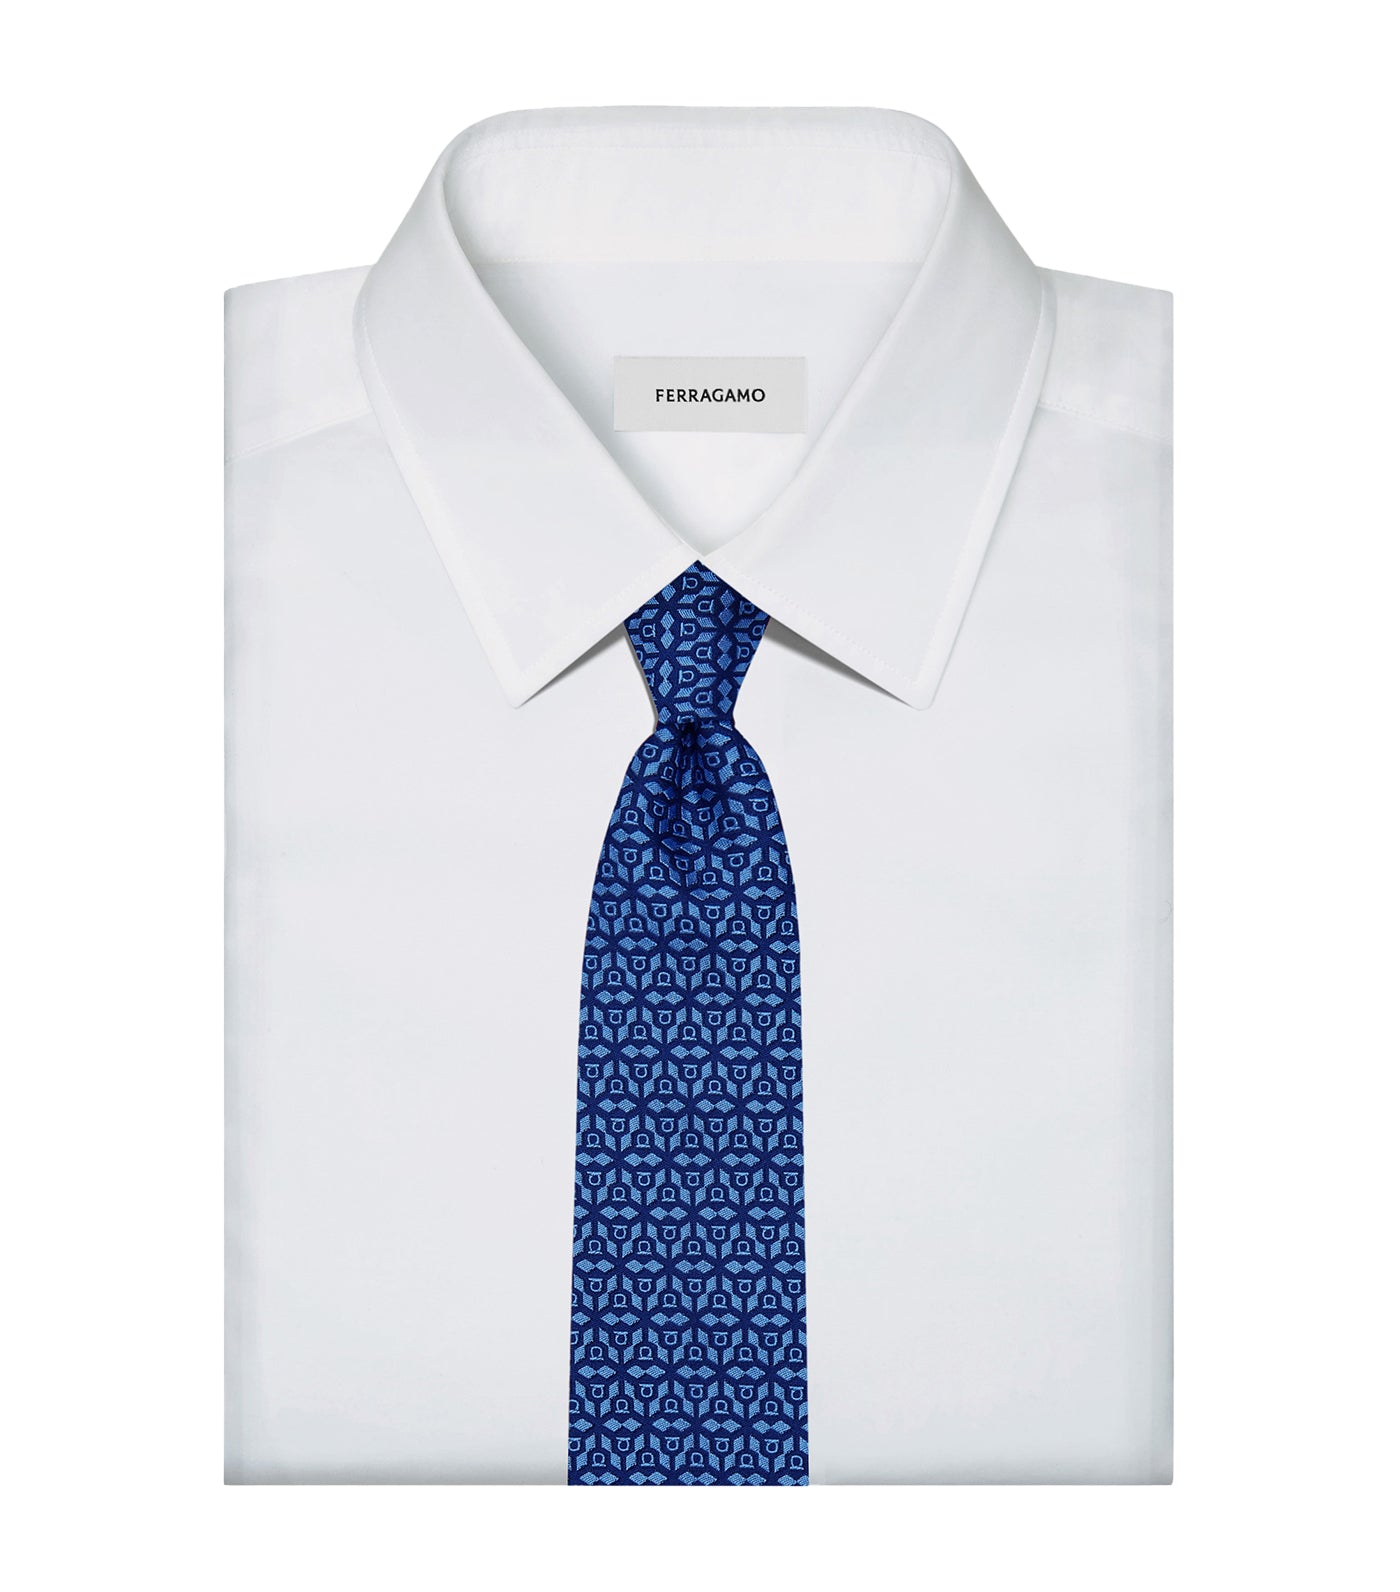 Silk Jacquard Tie Marine Blue